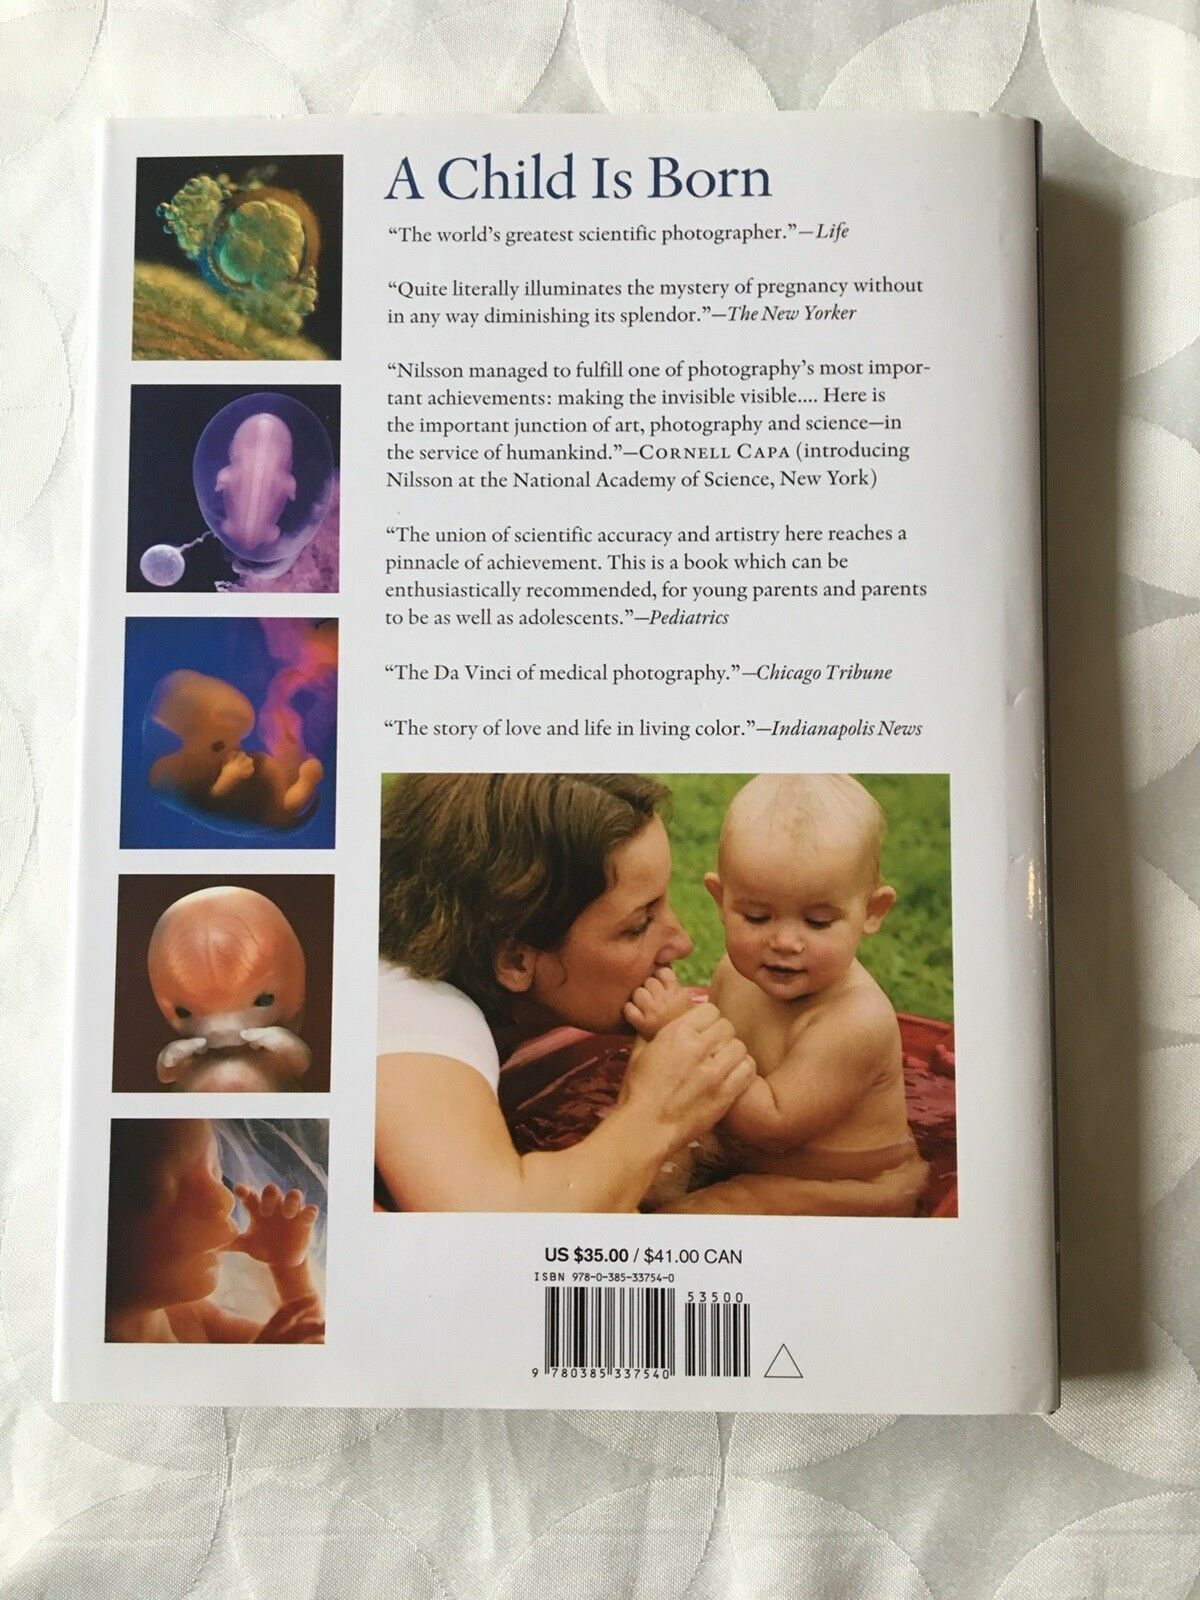 Bøger, Bog om graviditet